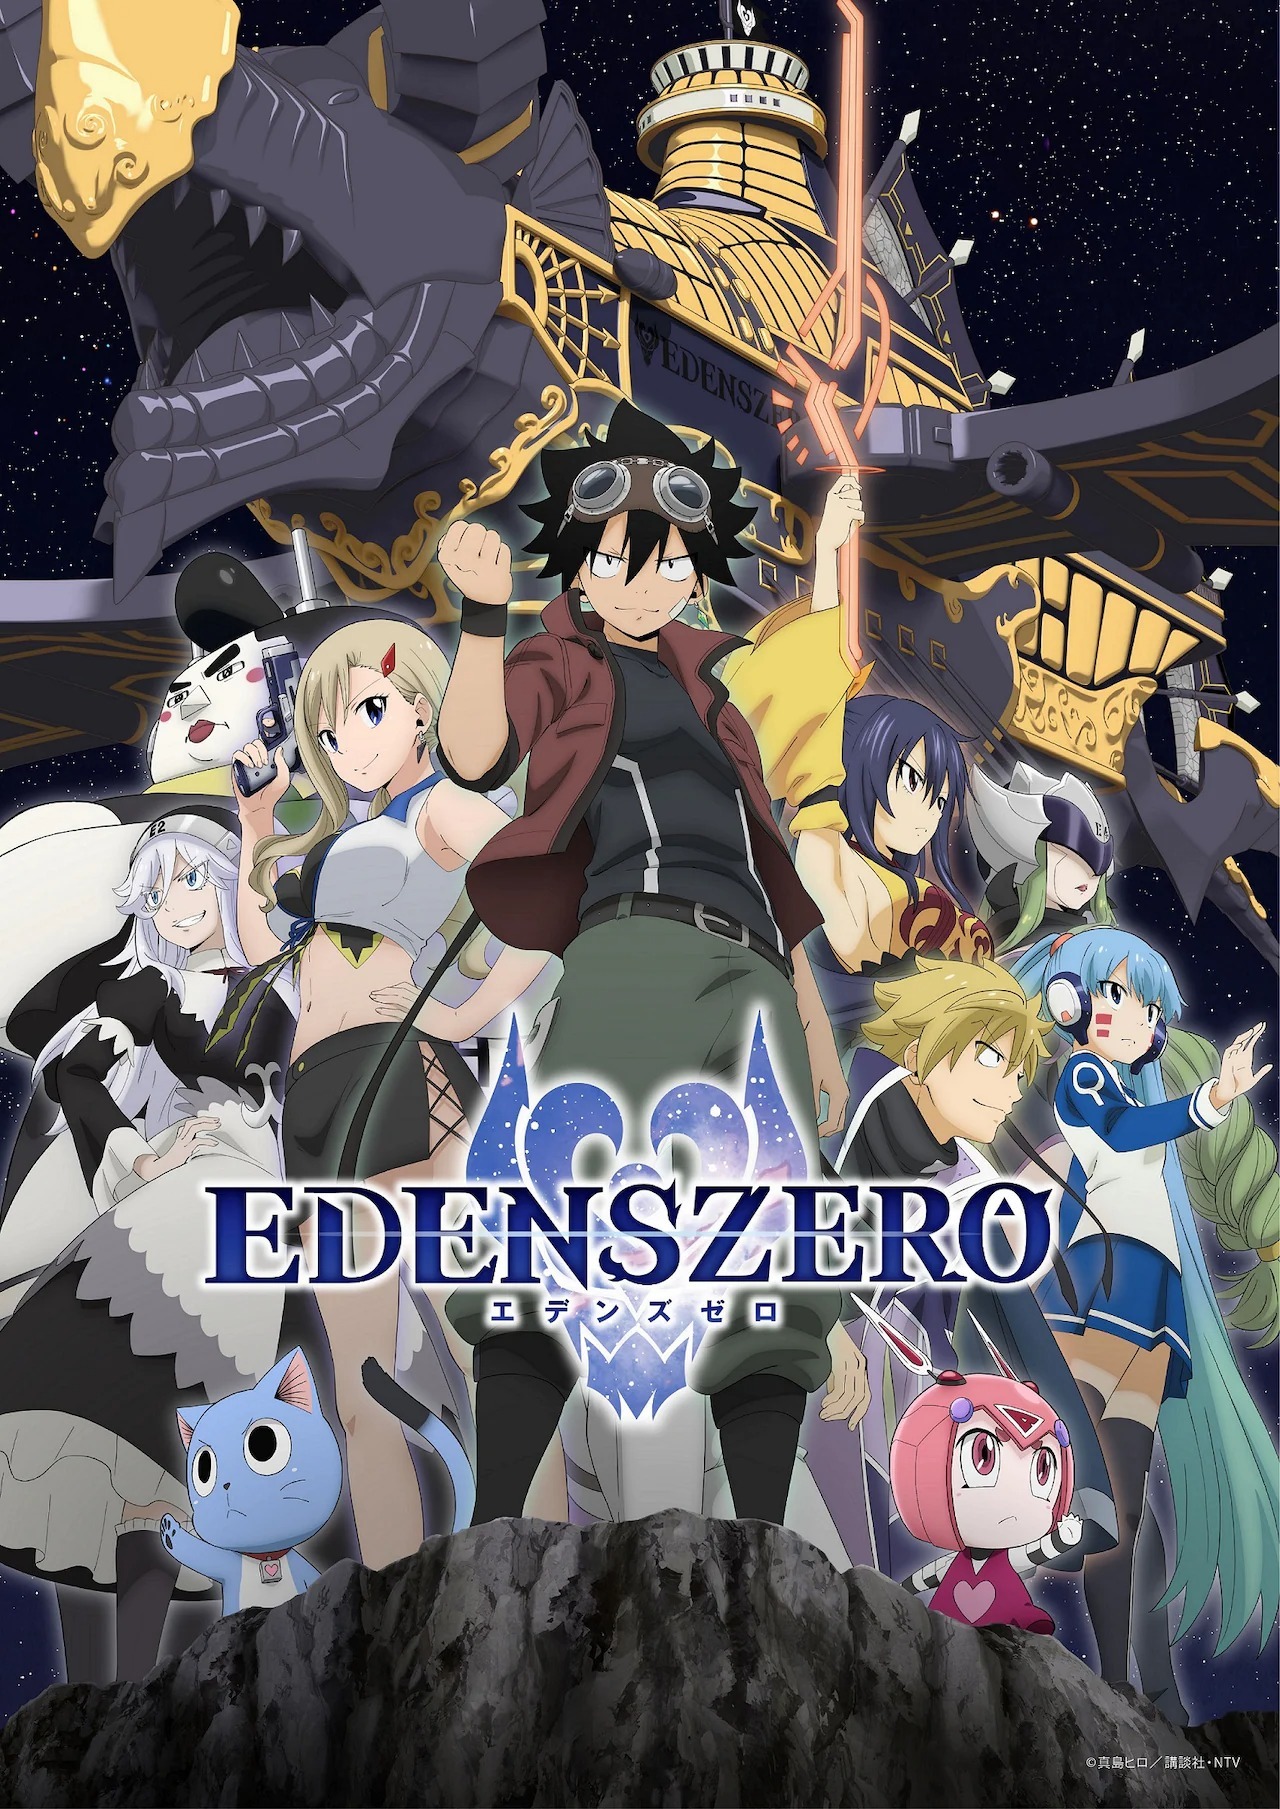 Hiro Mashima's Edens Zero Manga Kicks Off Final Arc